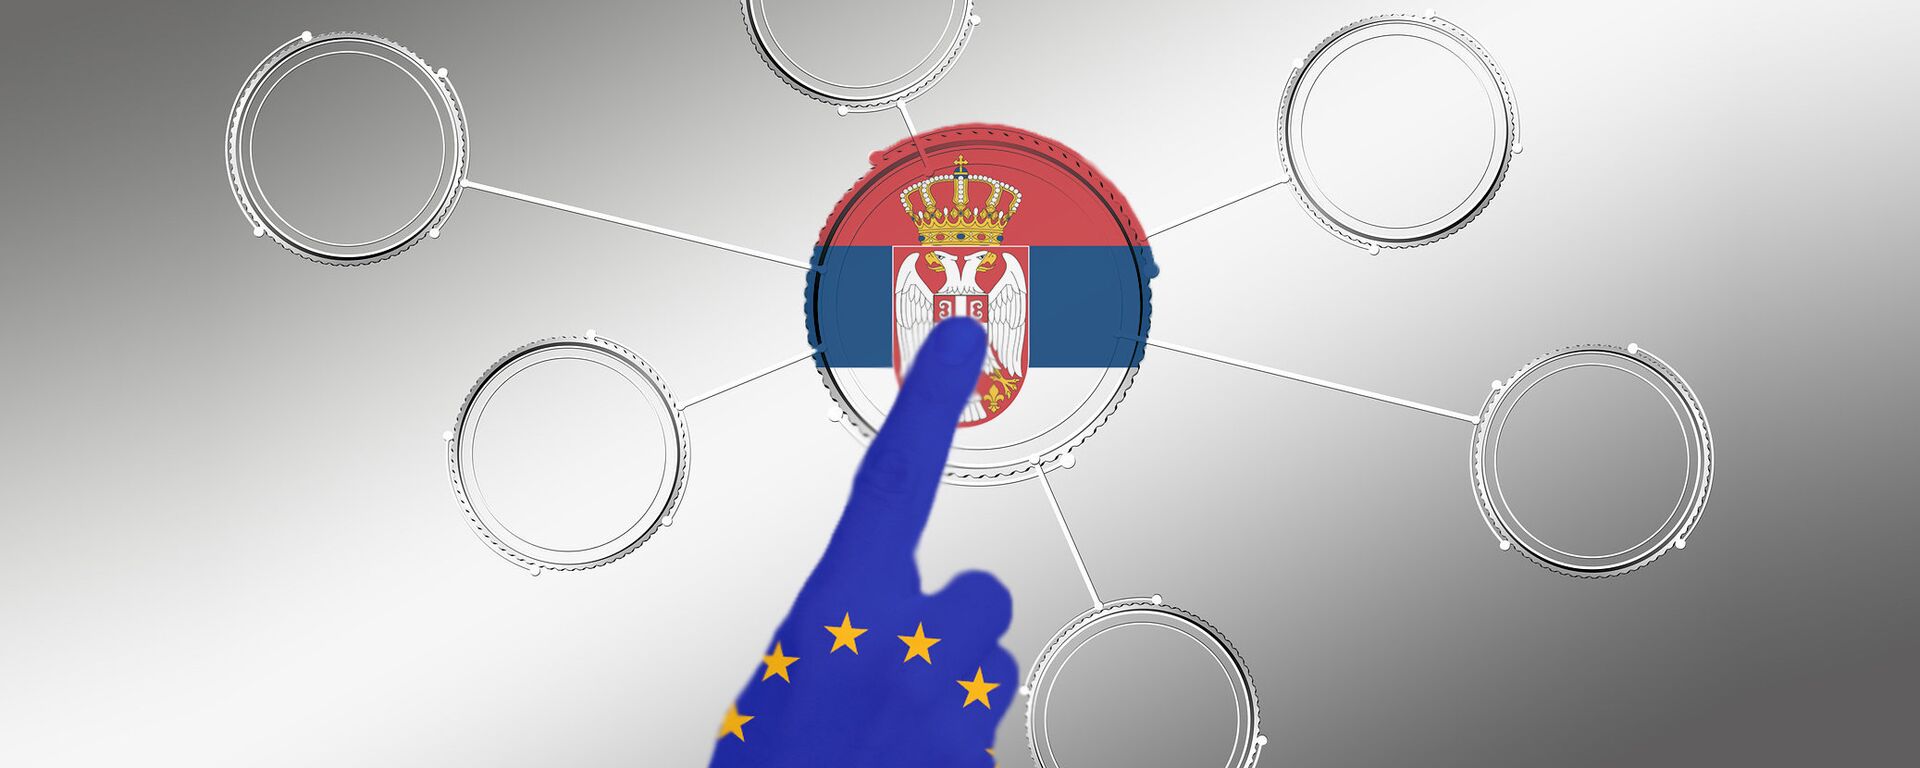 Srbija EU - ilustracija - Sputnik Srbija, 1920, 01.01.2020